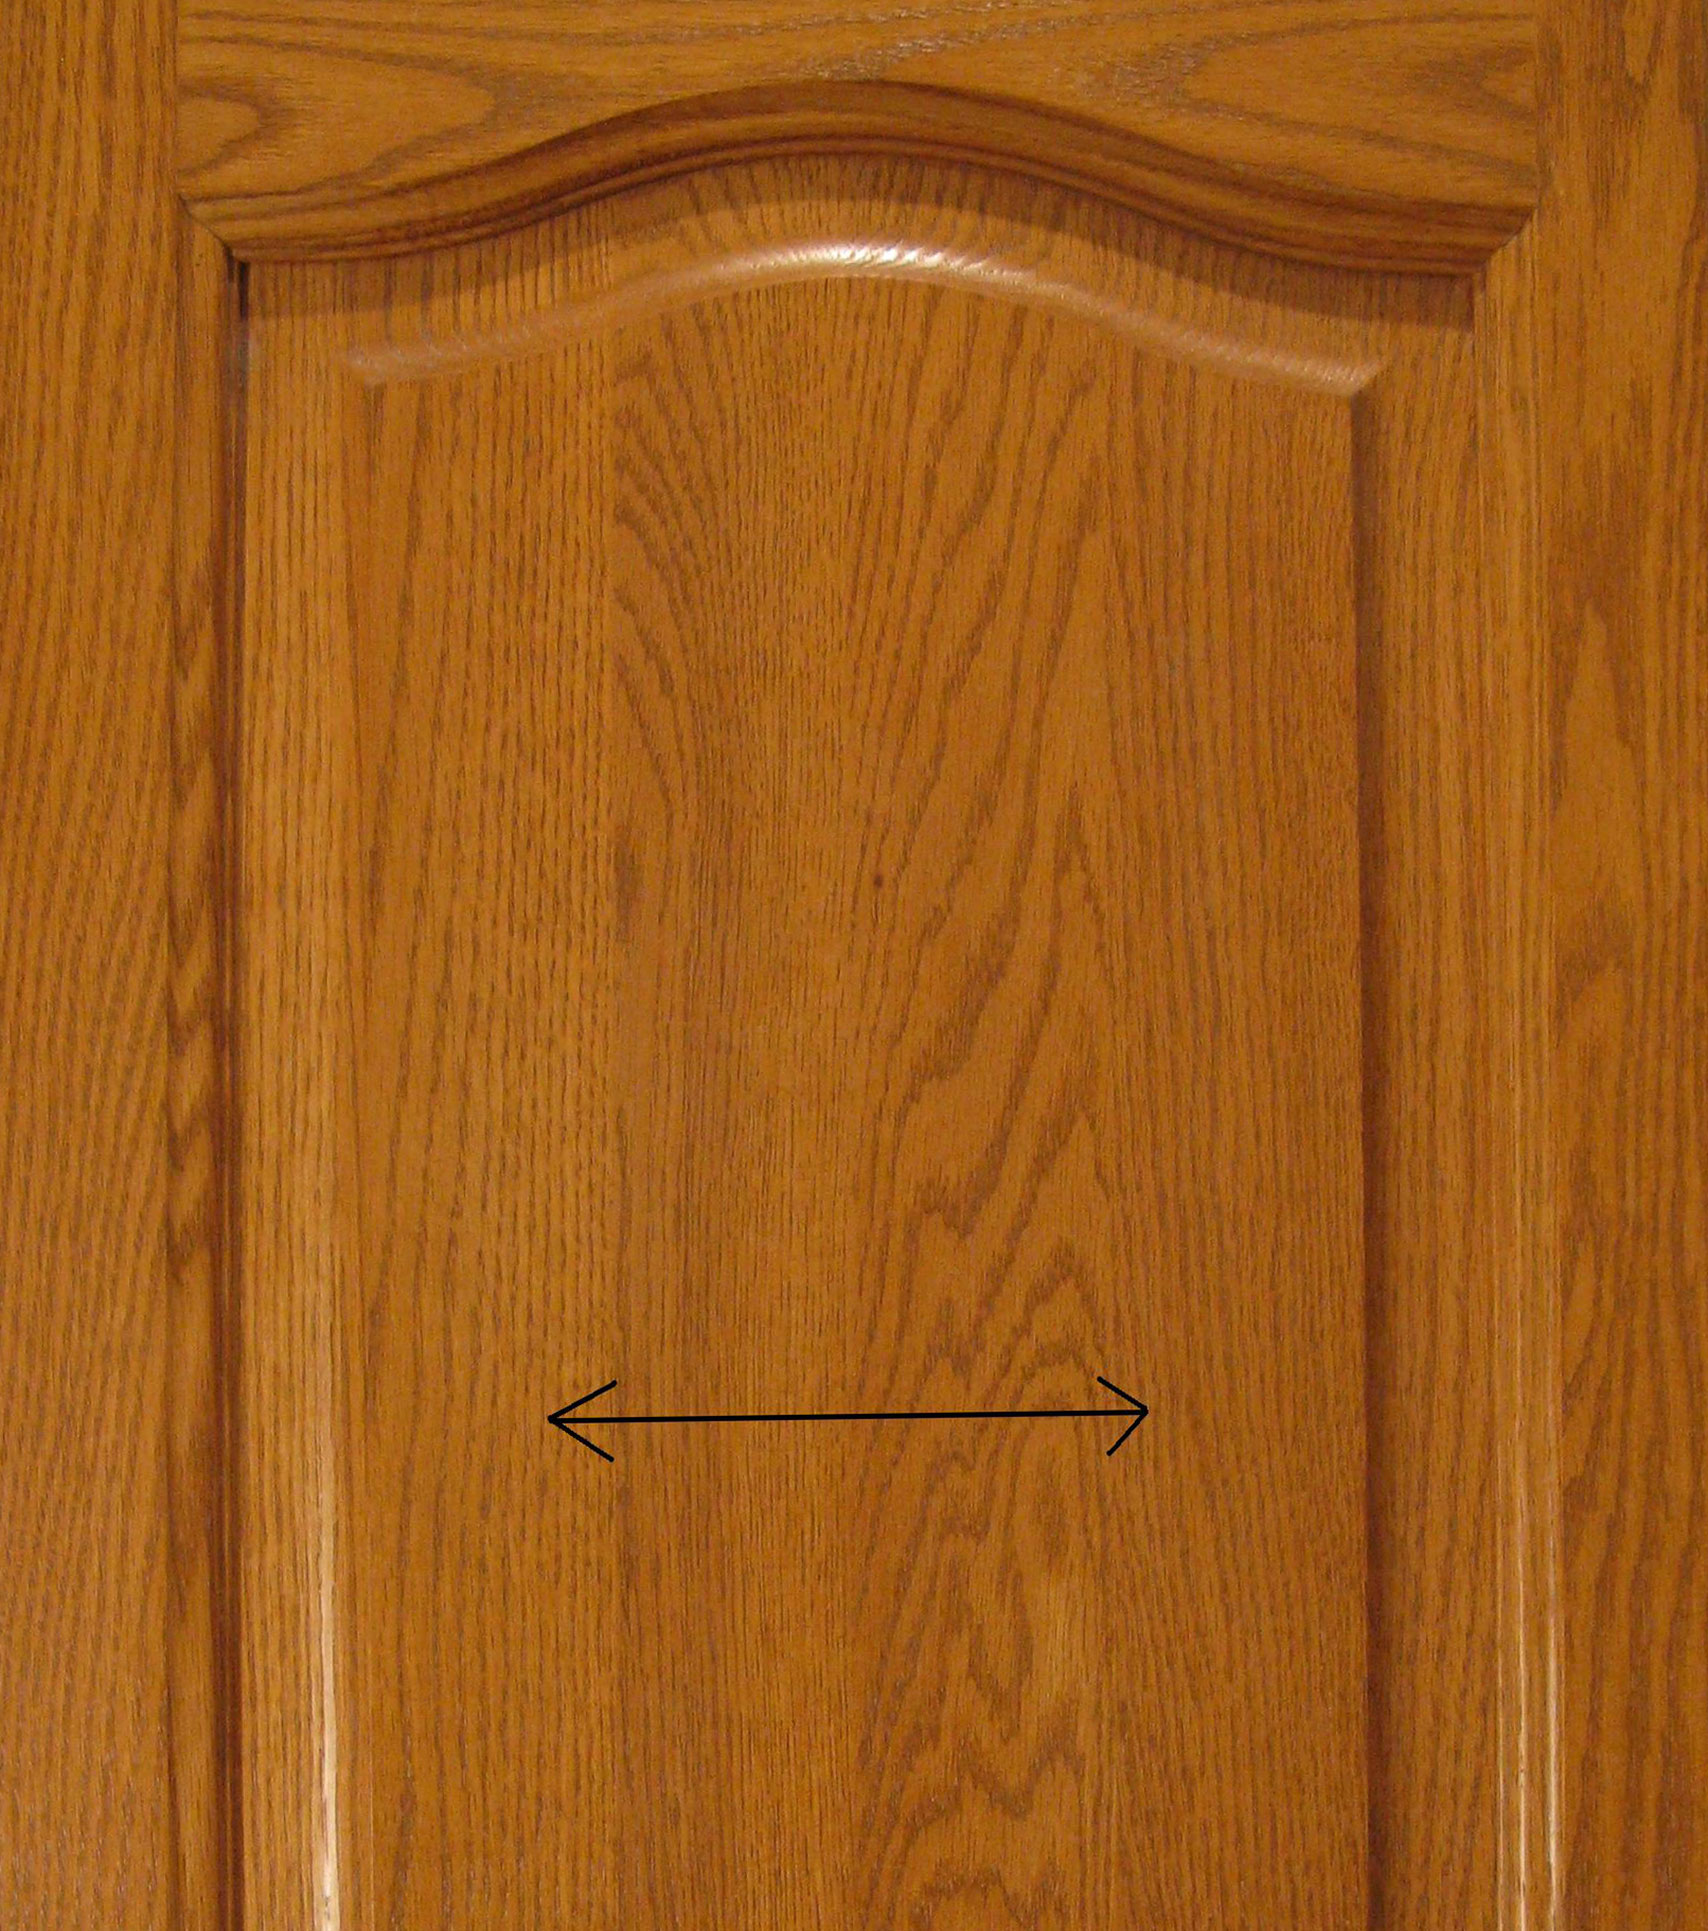 Wooden cabinet door.